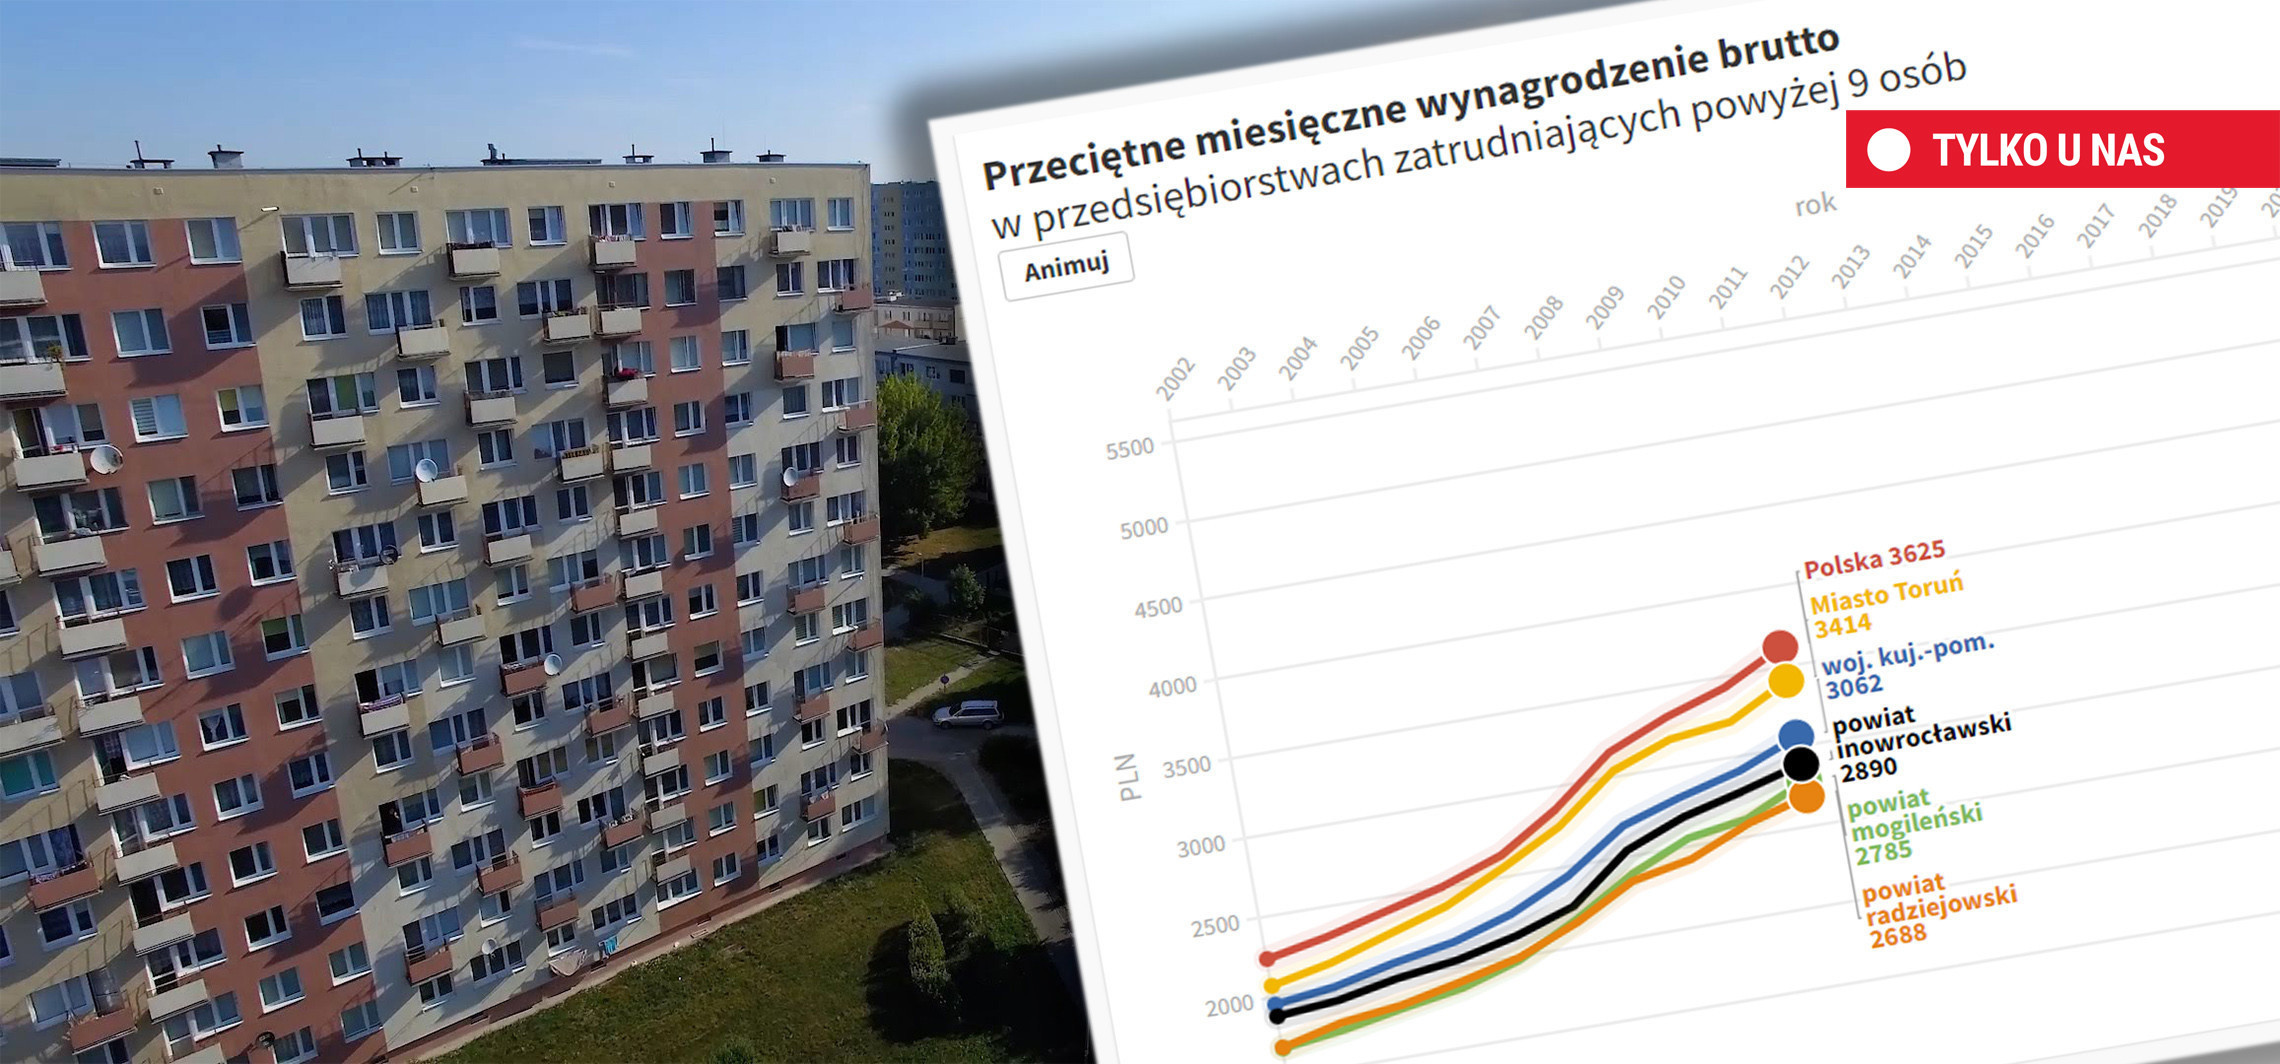 Inowrocław - Nasze zarobki w 2002 i 2020 r. Czemu ciągle niskie?